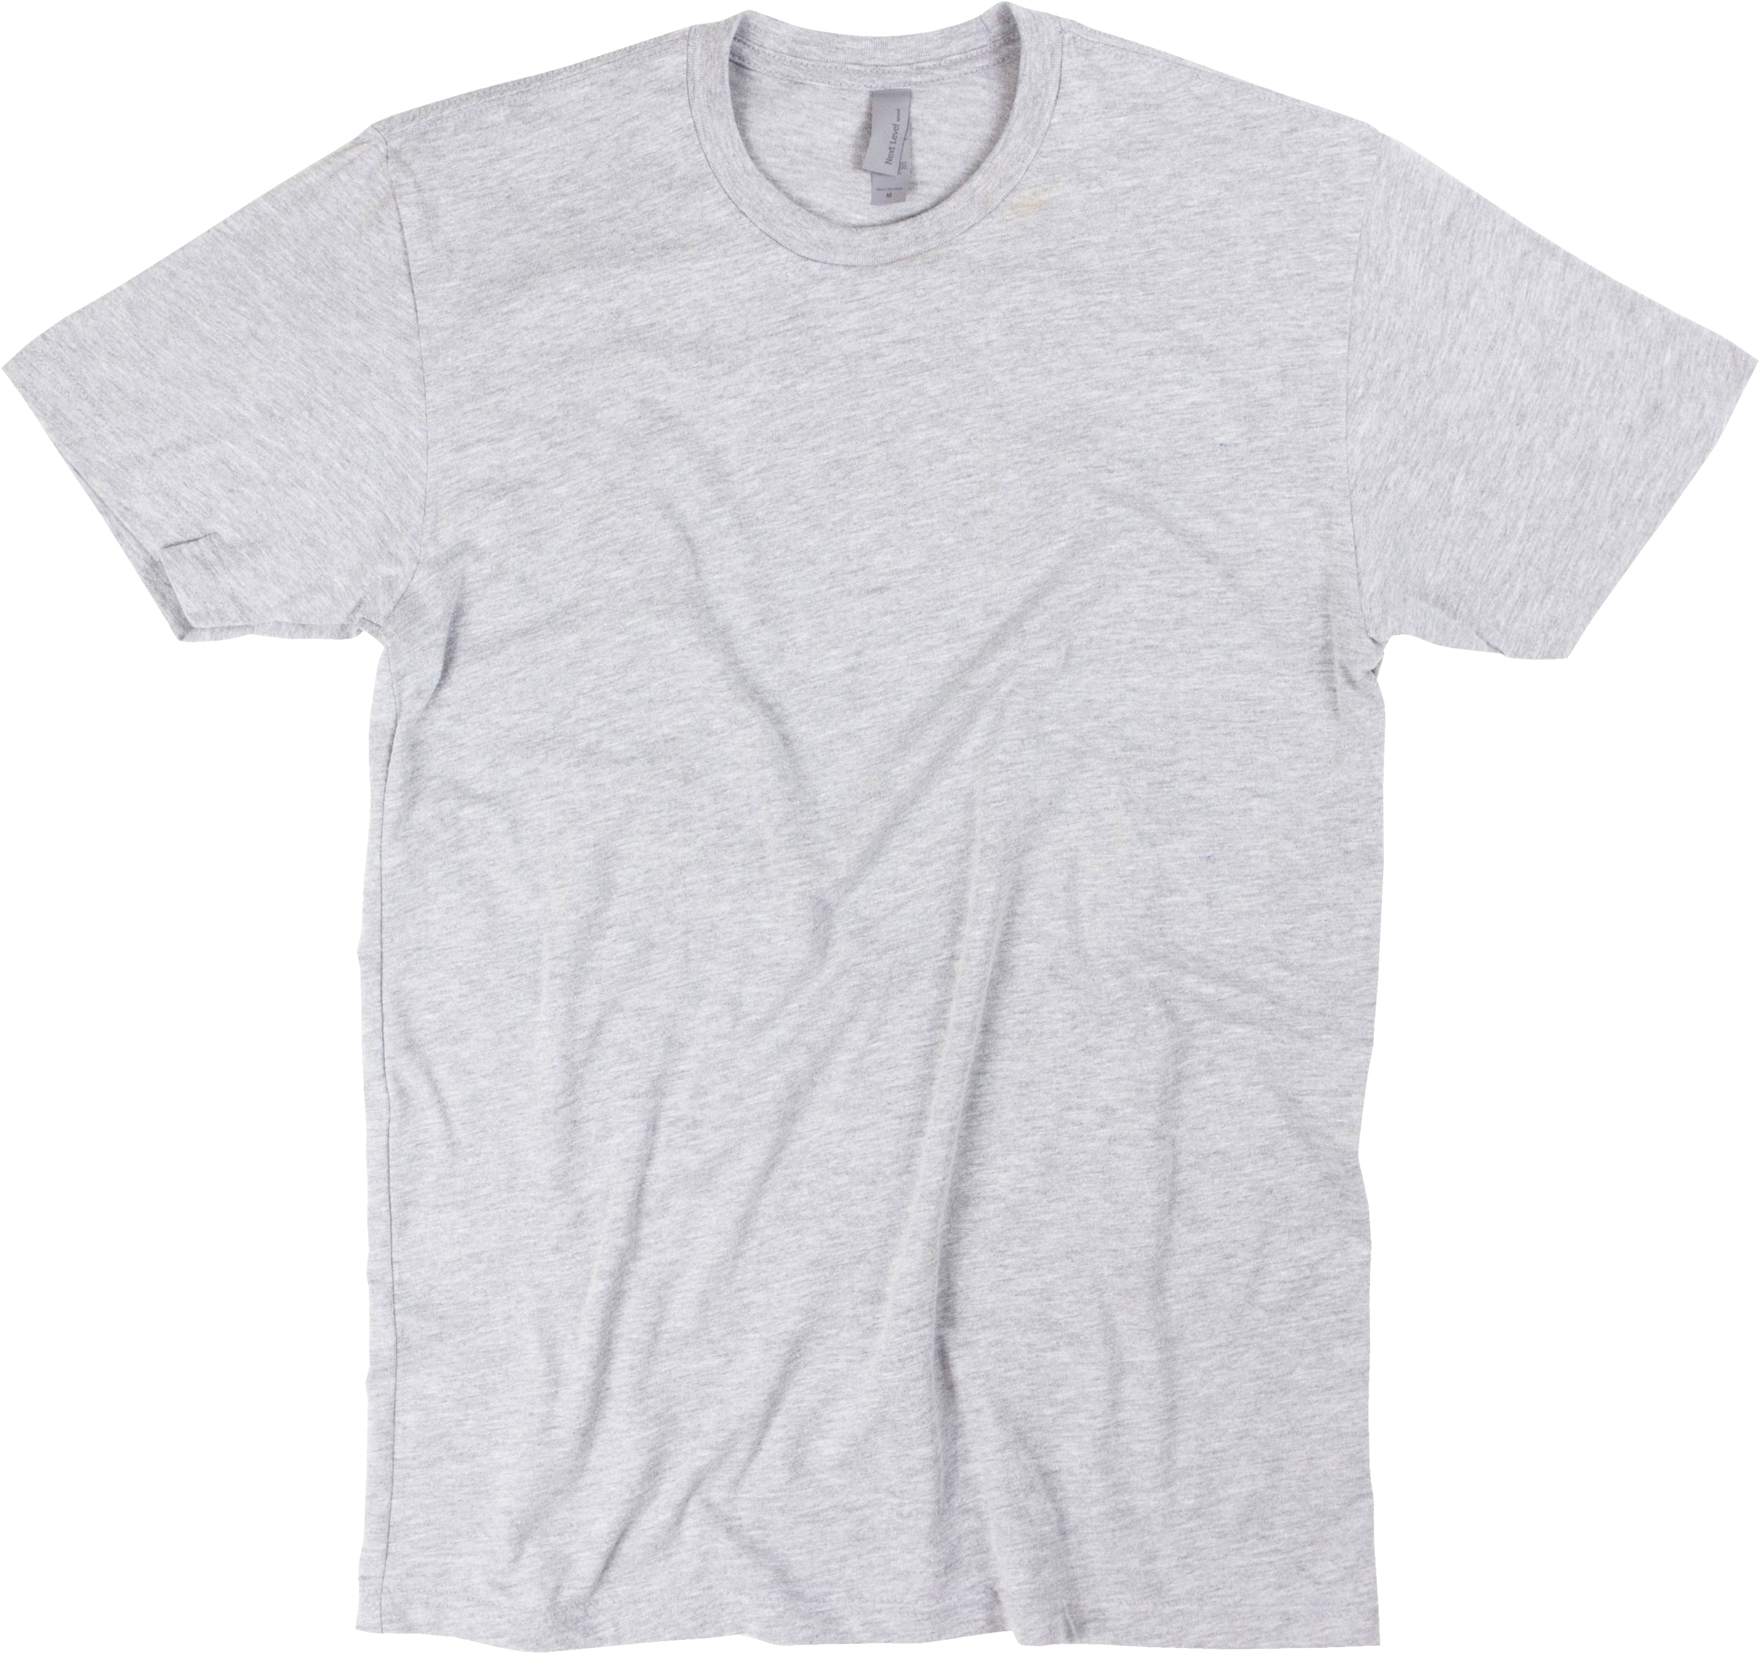 Plain Gray T Shirt Mockup PNG